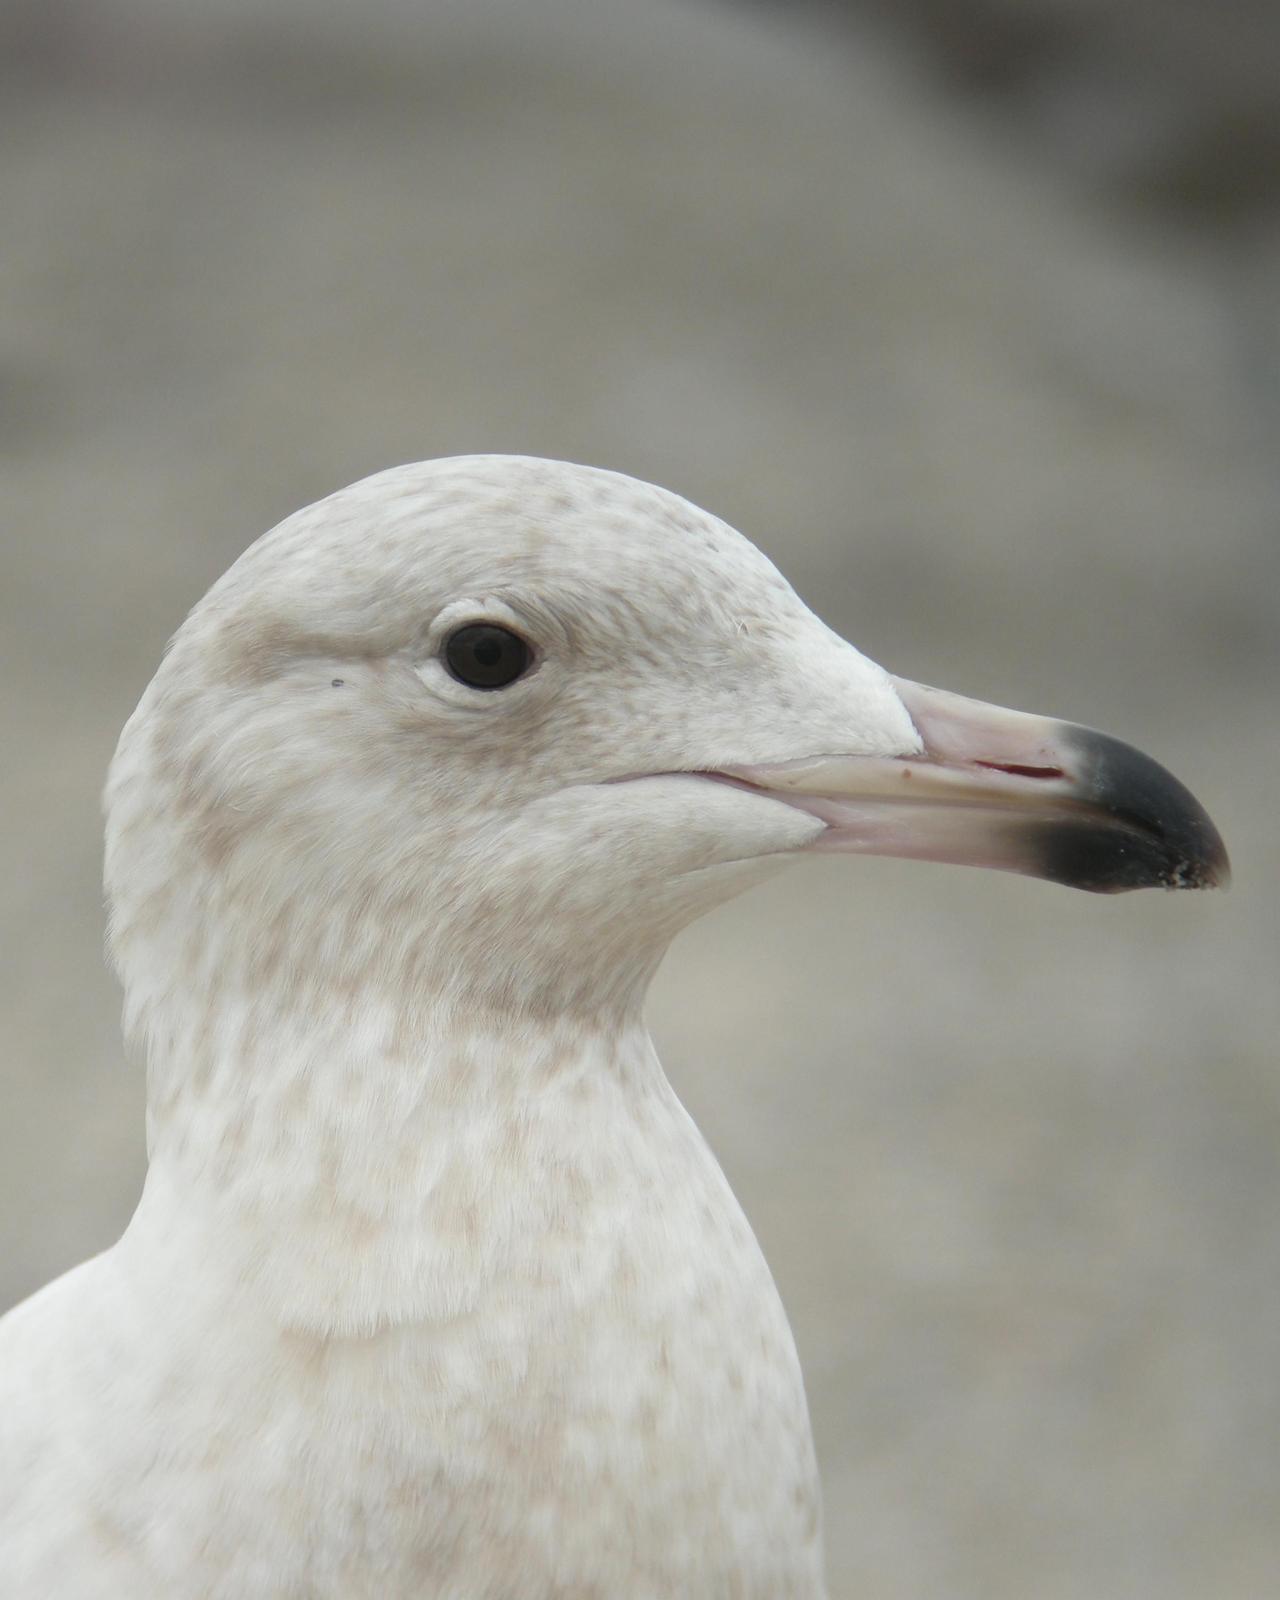 Glaucous Gull Photo by Oscar Johnson